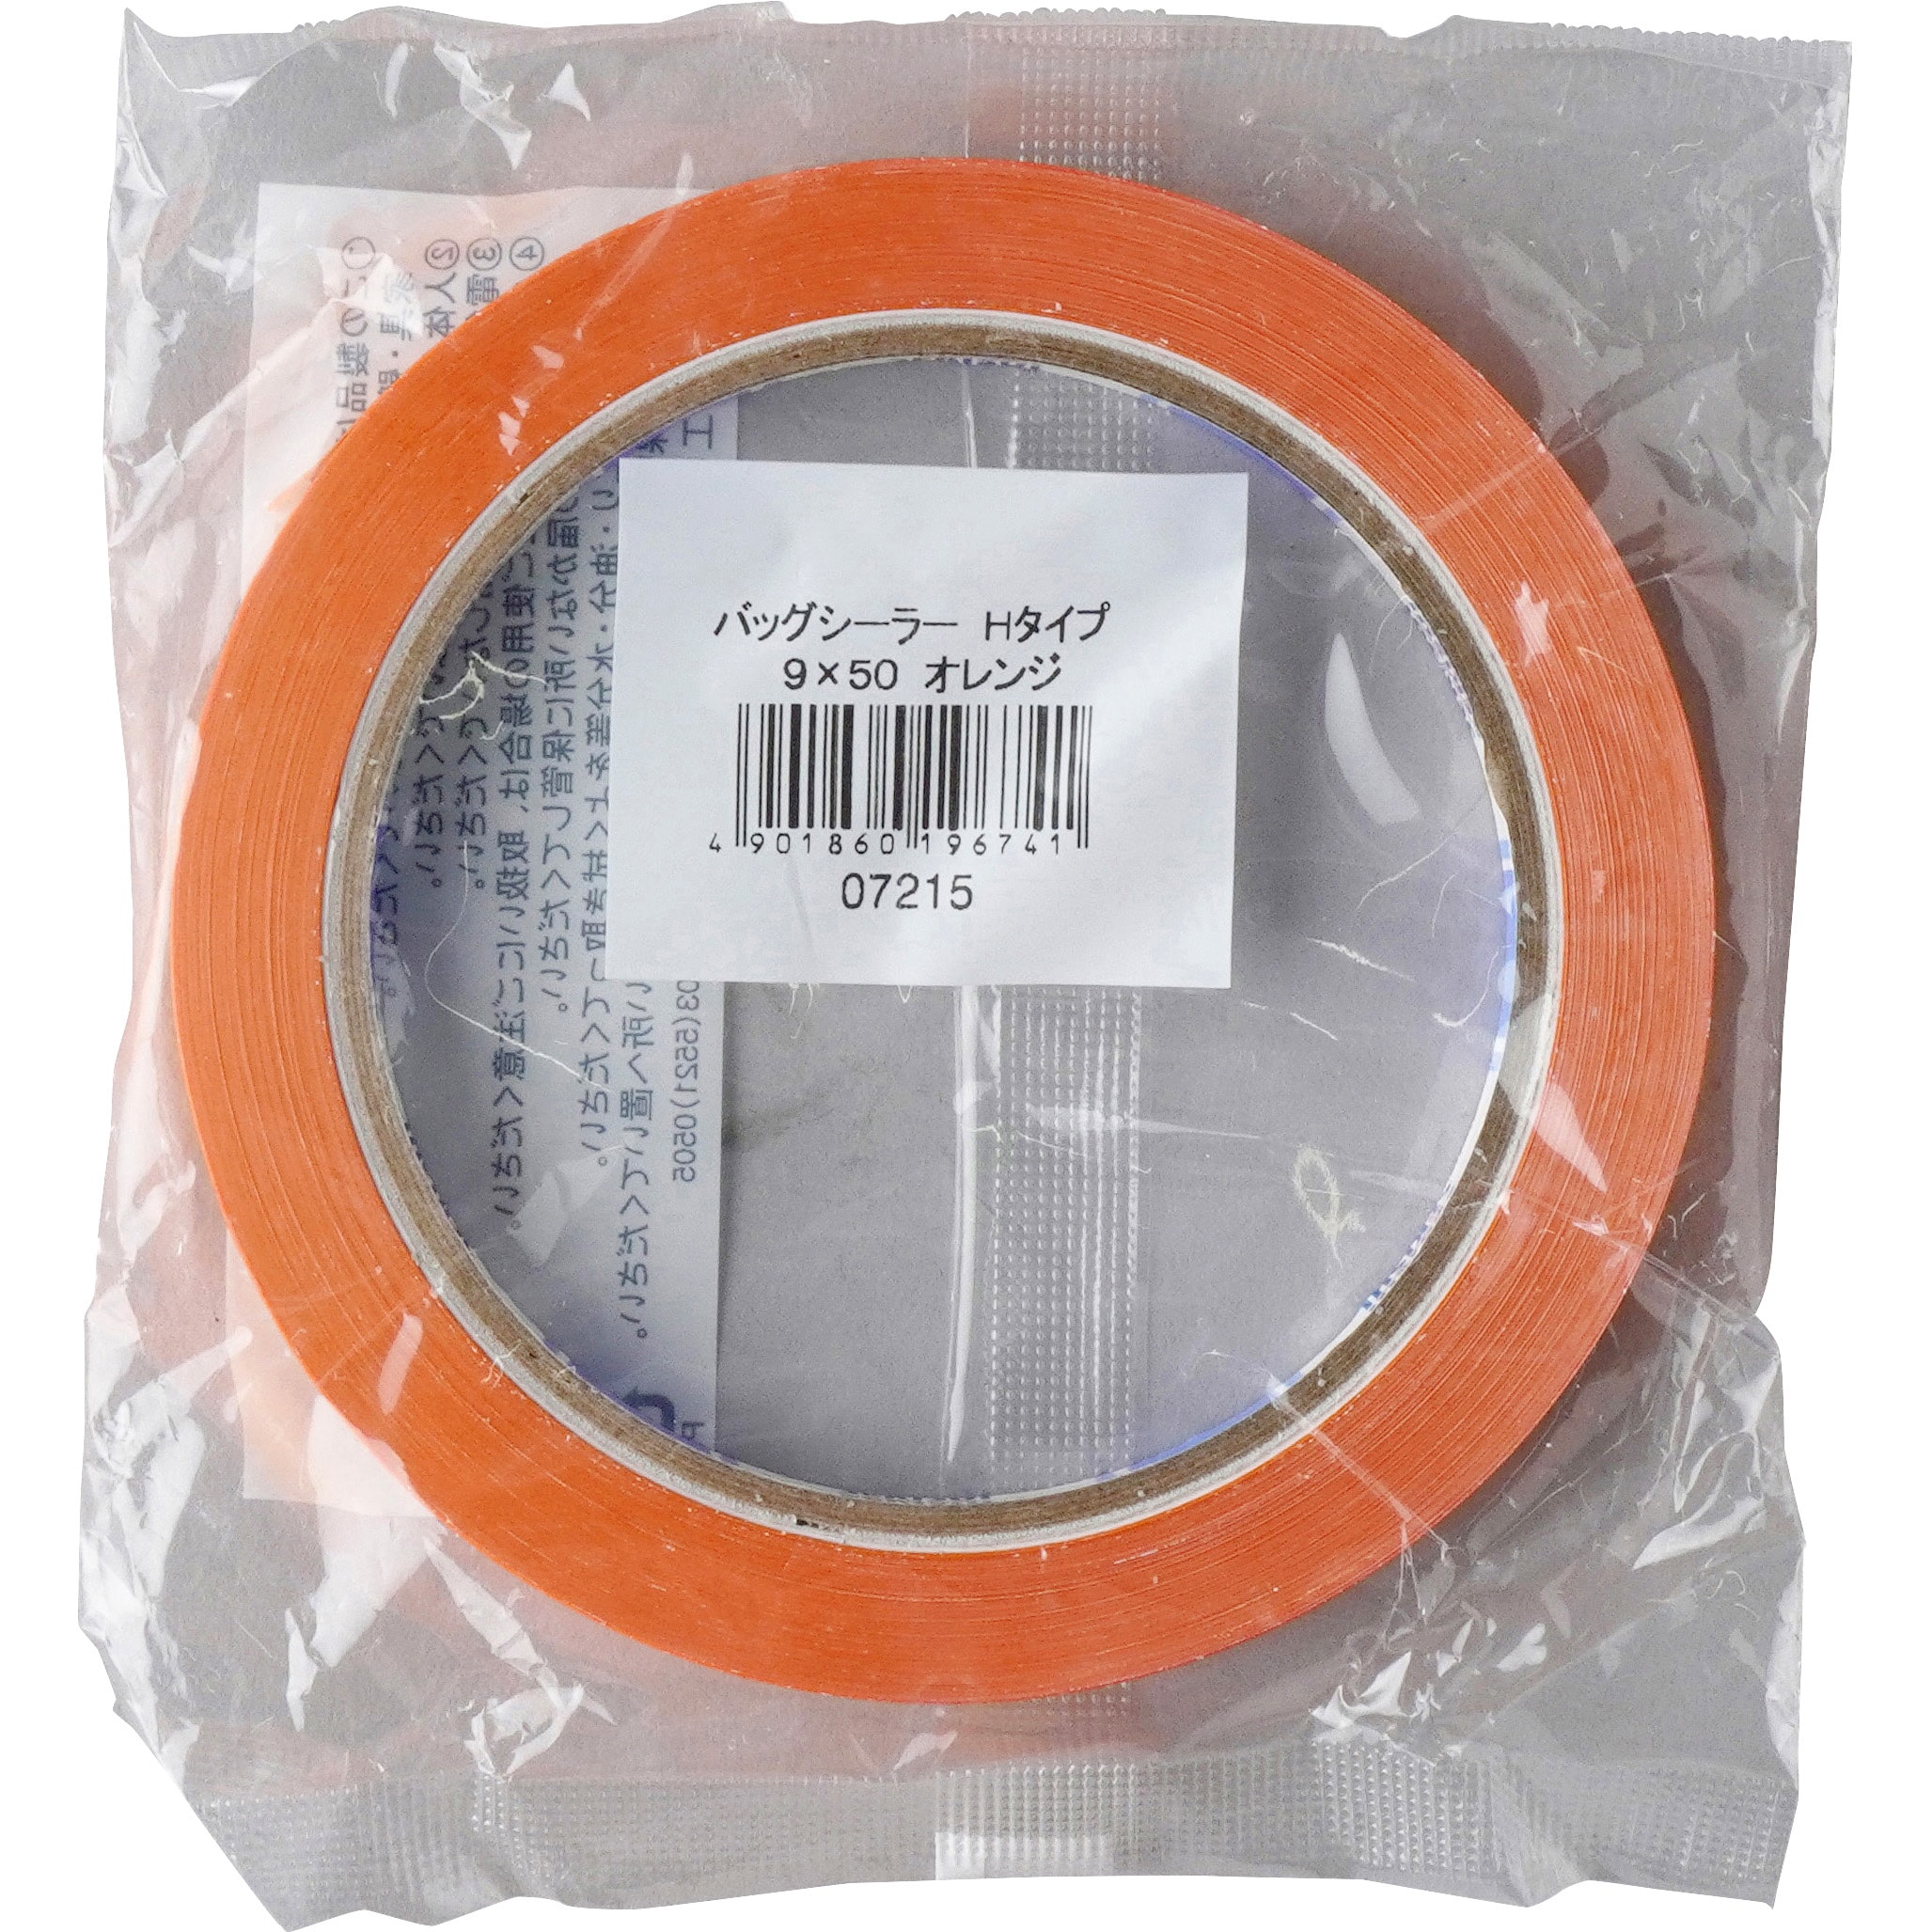 ケース販売積水化学工業 バッグシーラーテープ Hタイプ 9×50 チェック赤 002000022 1ケース(200巻入) - 1